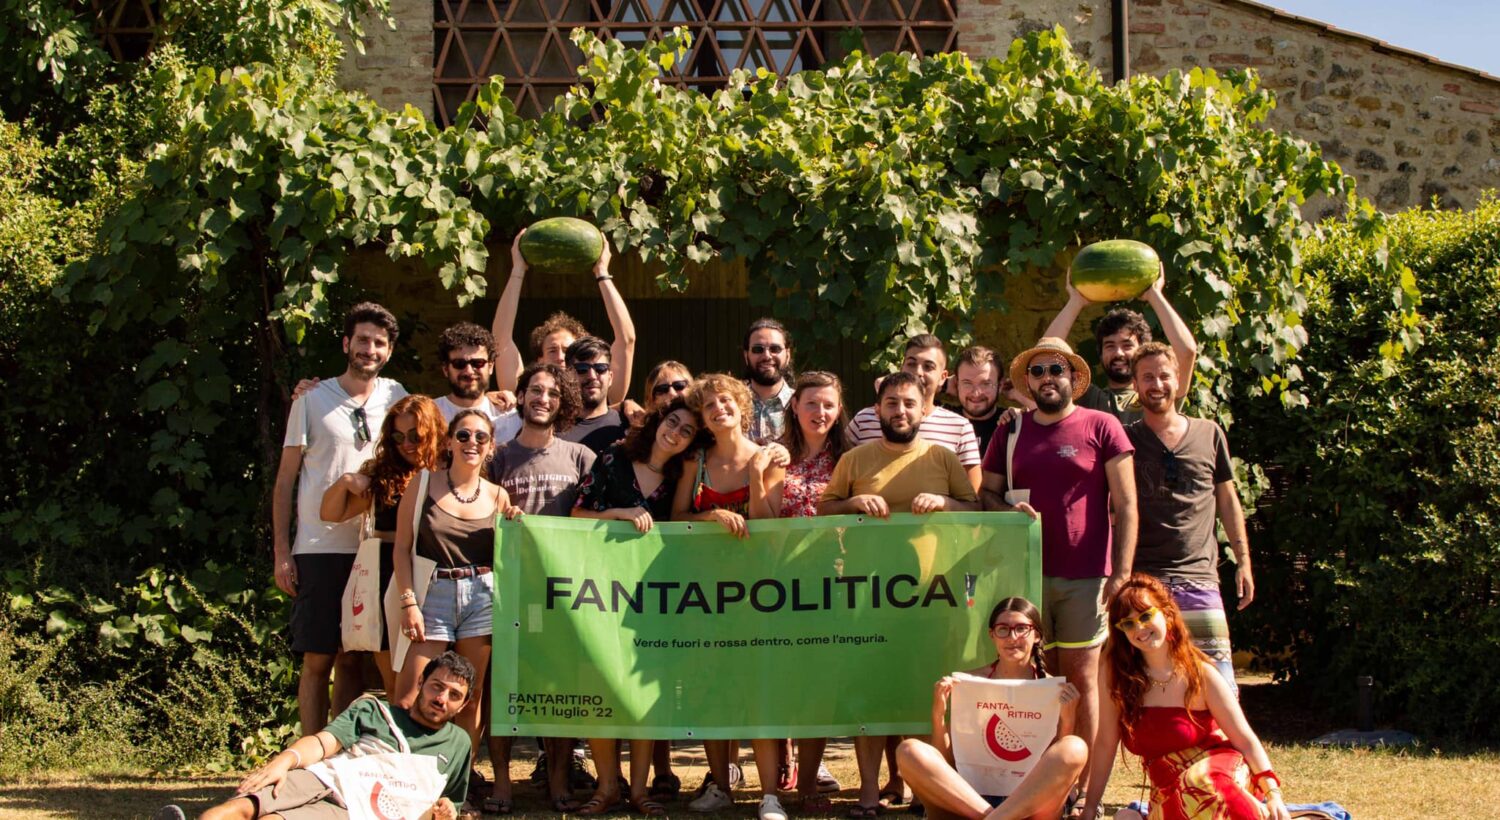 Fantapolitica Bringing the Fun into Italian Youth Politics